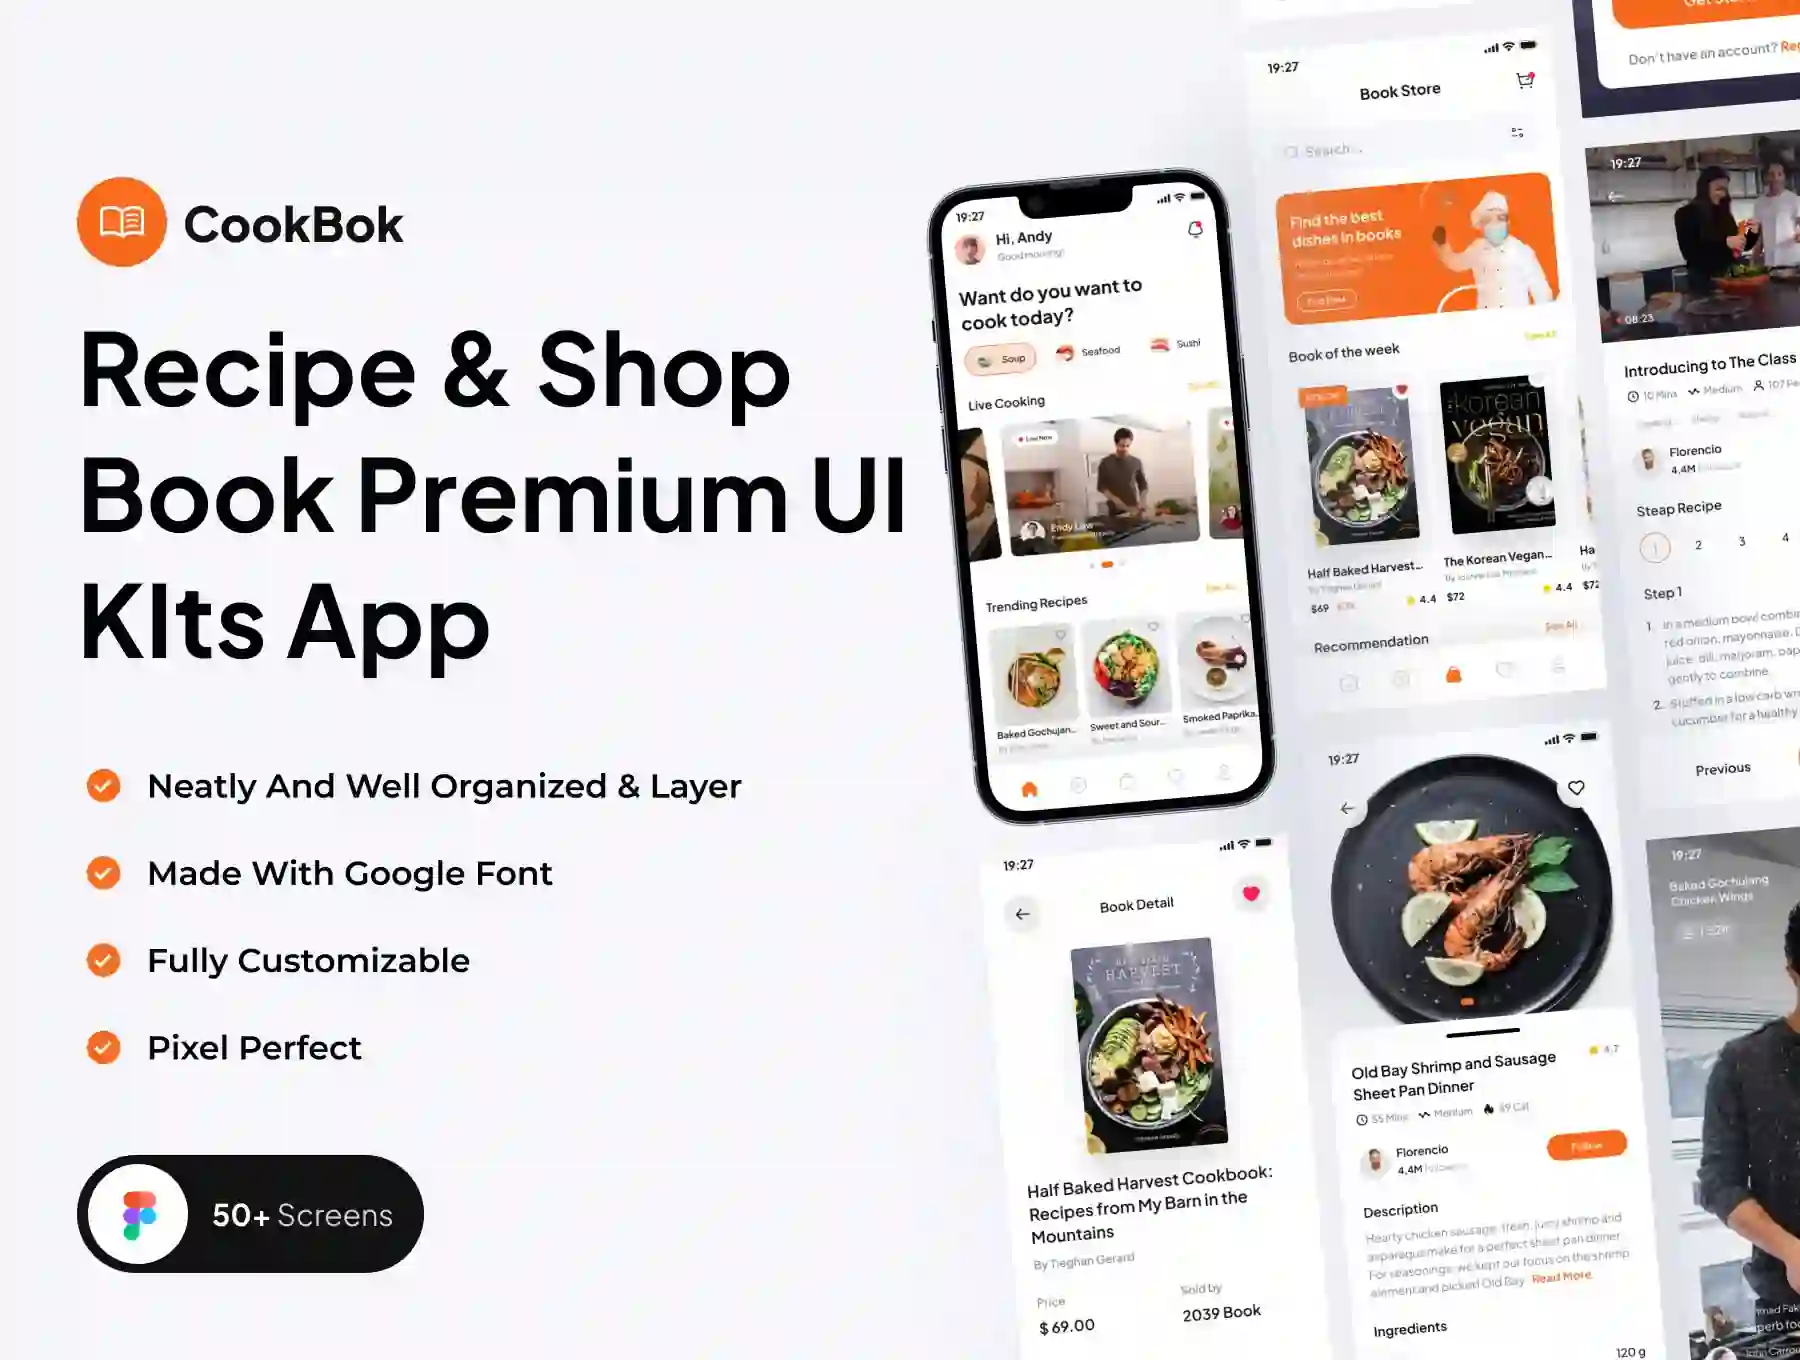 CookBok - Recipe & Book Store Premium UI KIts App